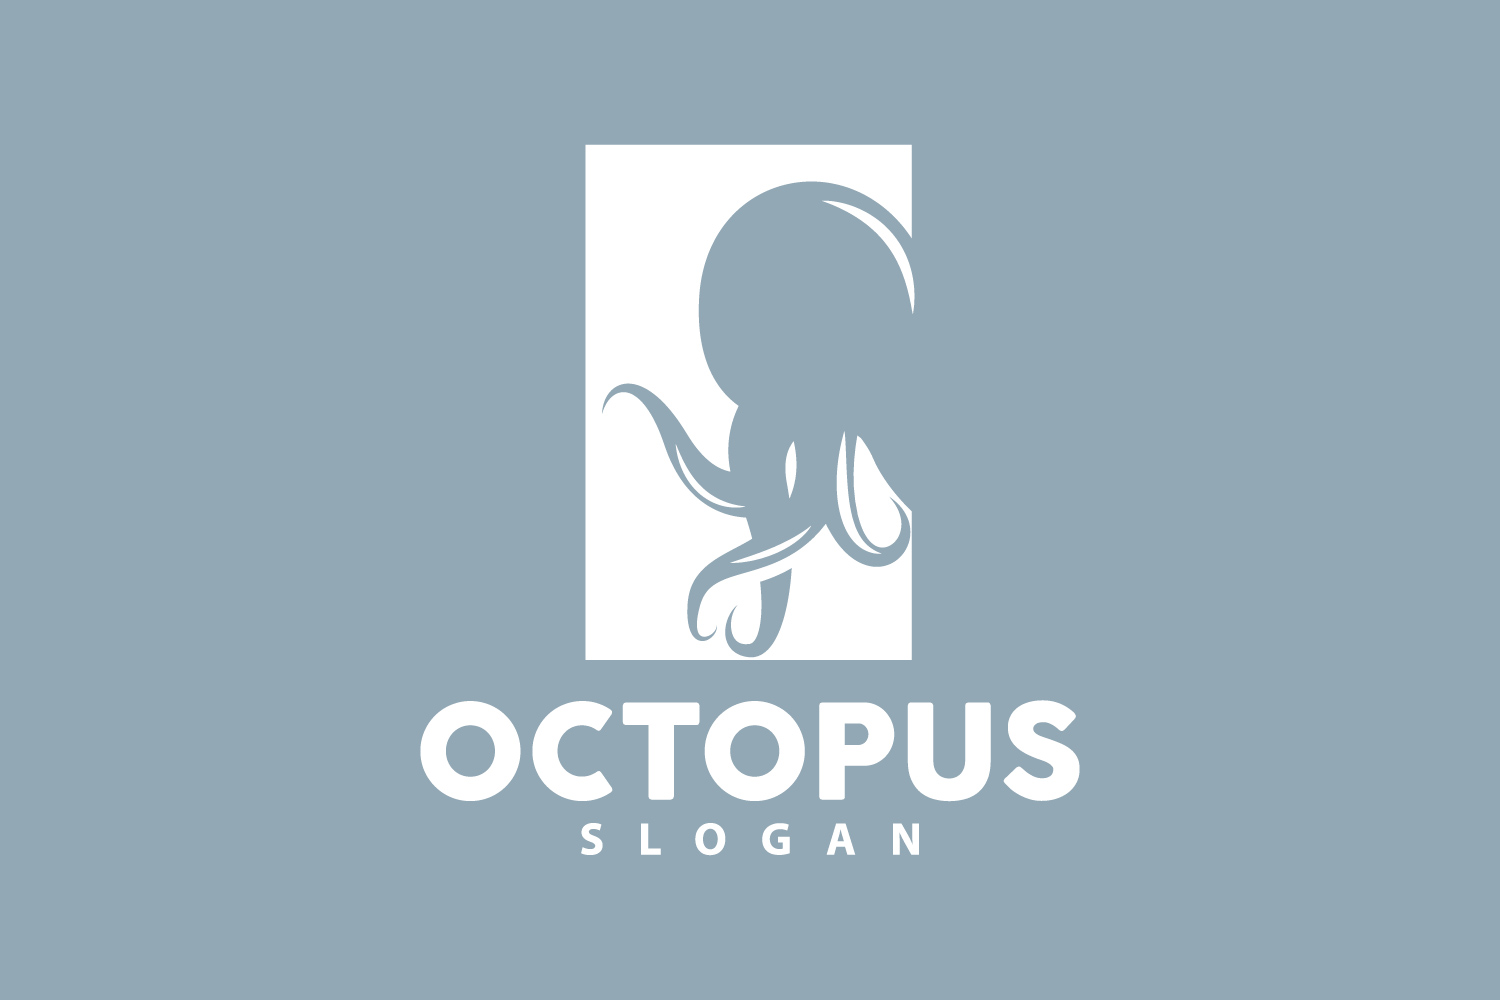 Octopus Logo Old Retro Vintage DesignV11